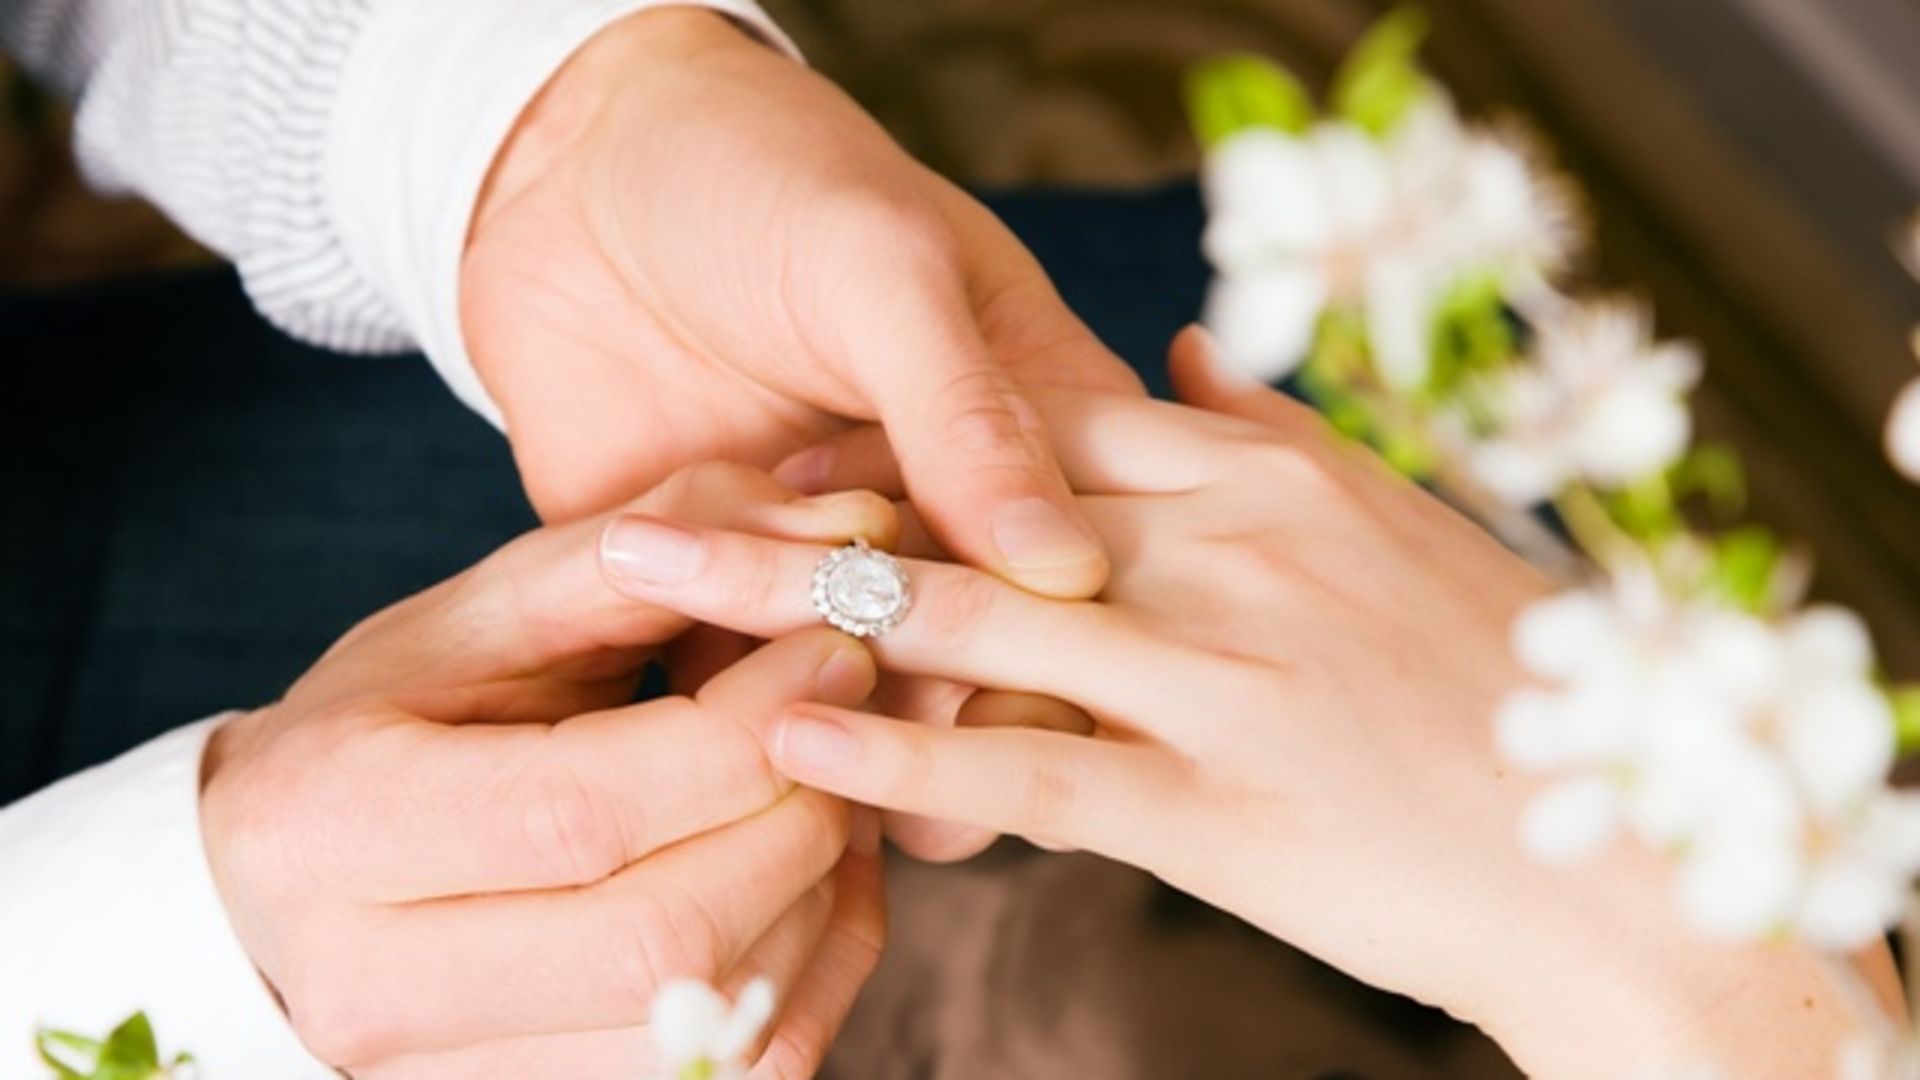 Сны к замужеству. Кольцо для предложения девушке. Предложение руки и сердца. Обручальное кольцо для предложения. Дарит кольцо.